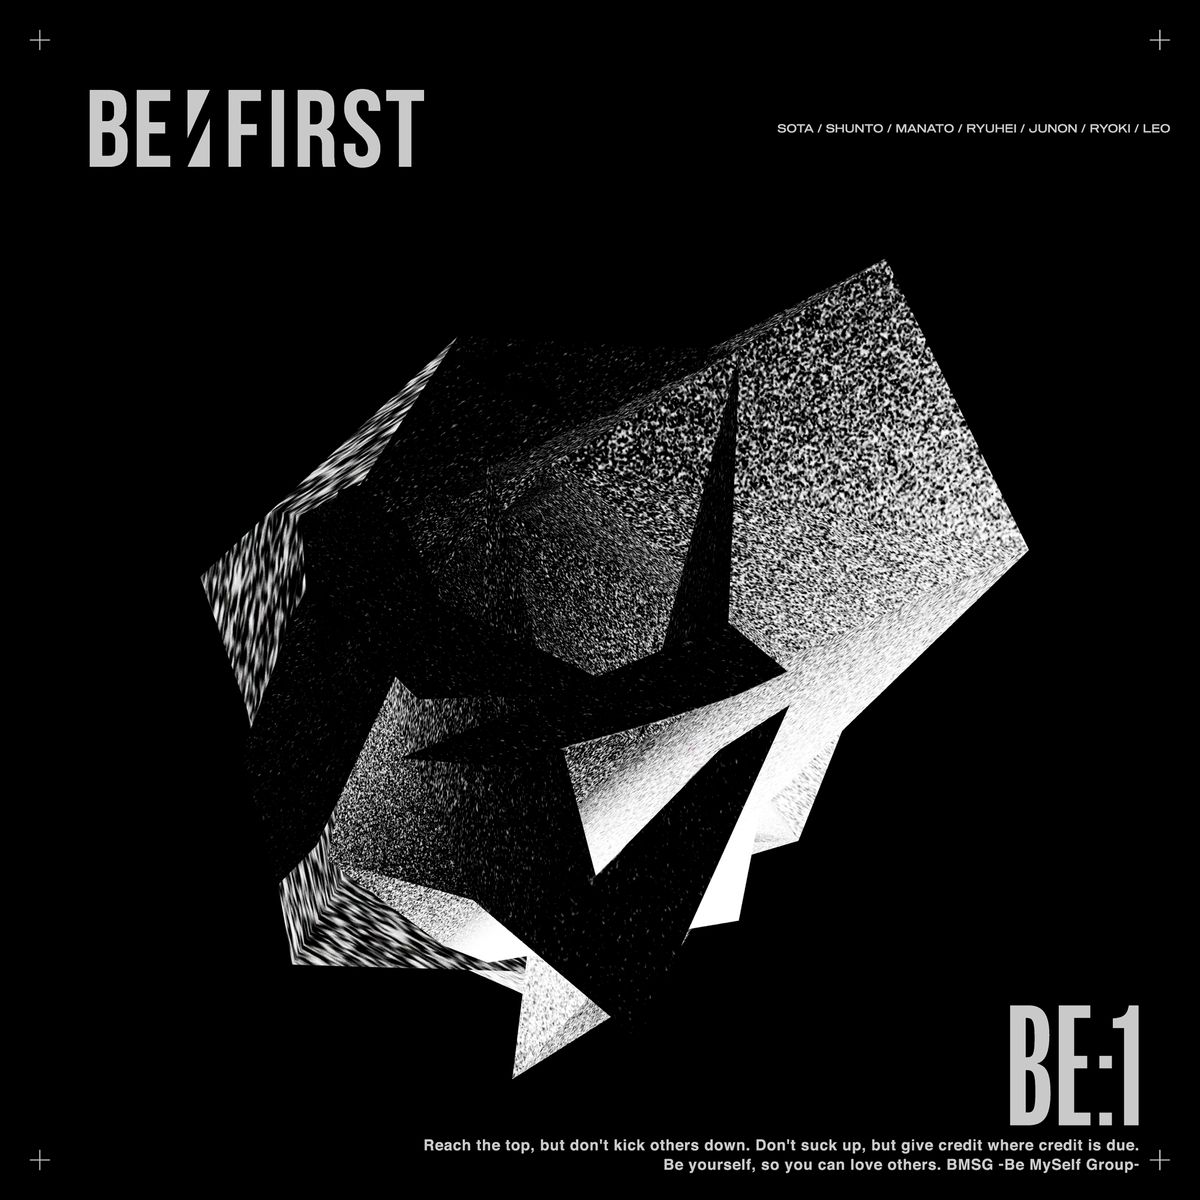 1stアルバム『BE:1』